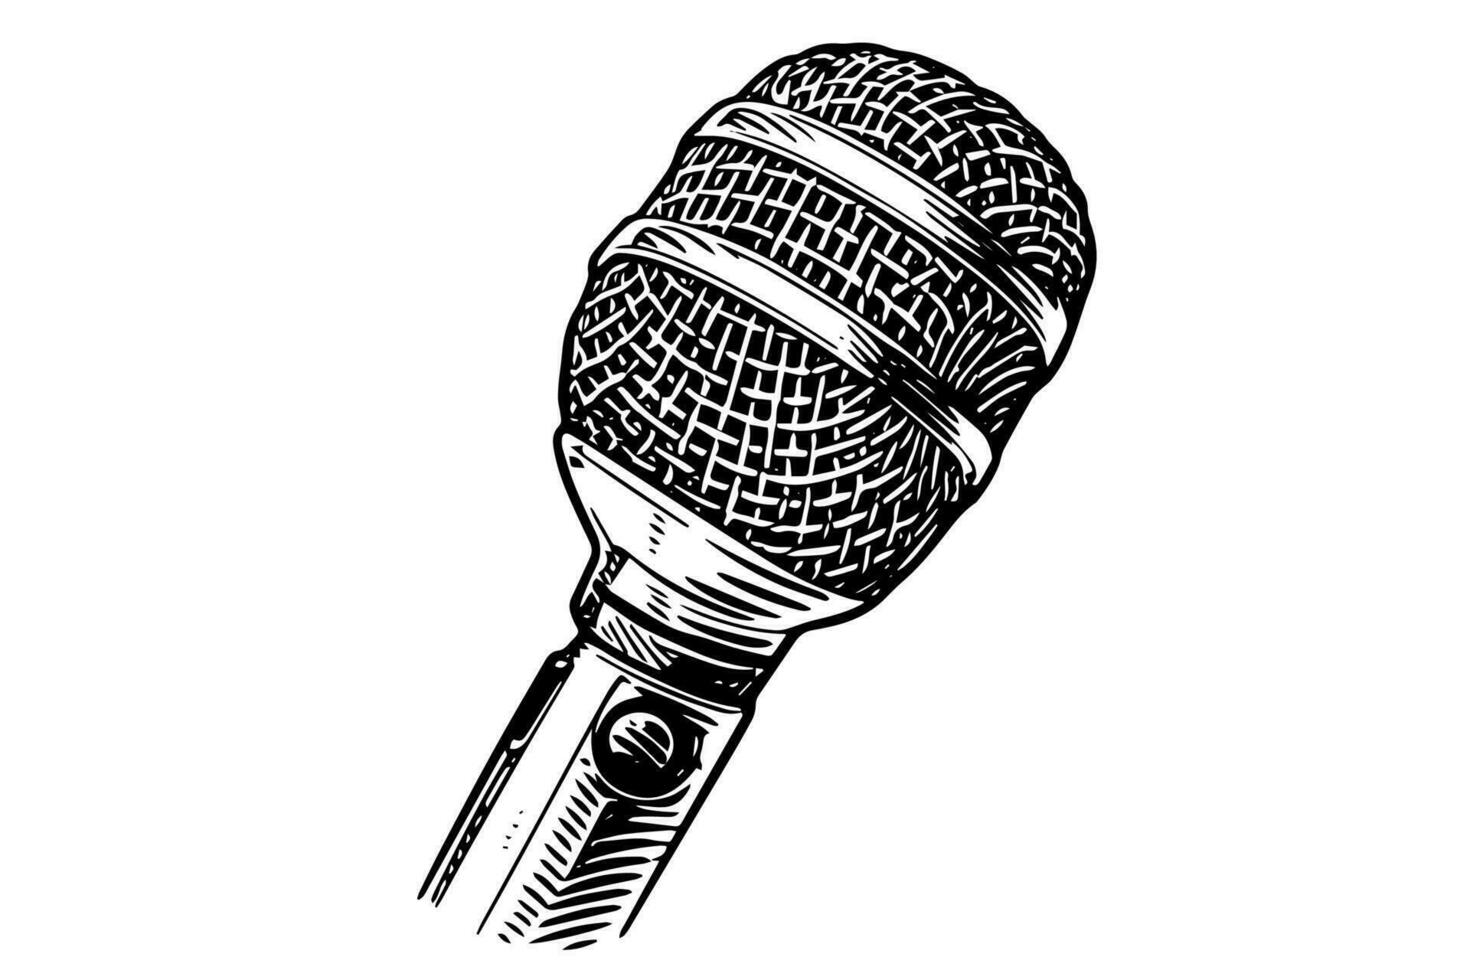 Jahrgang Mikrofon Hand gezeichnet skizzieren Gravur Stil Vektor Illustration.